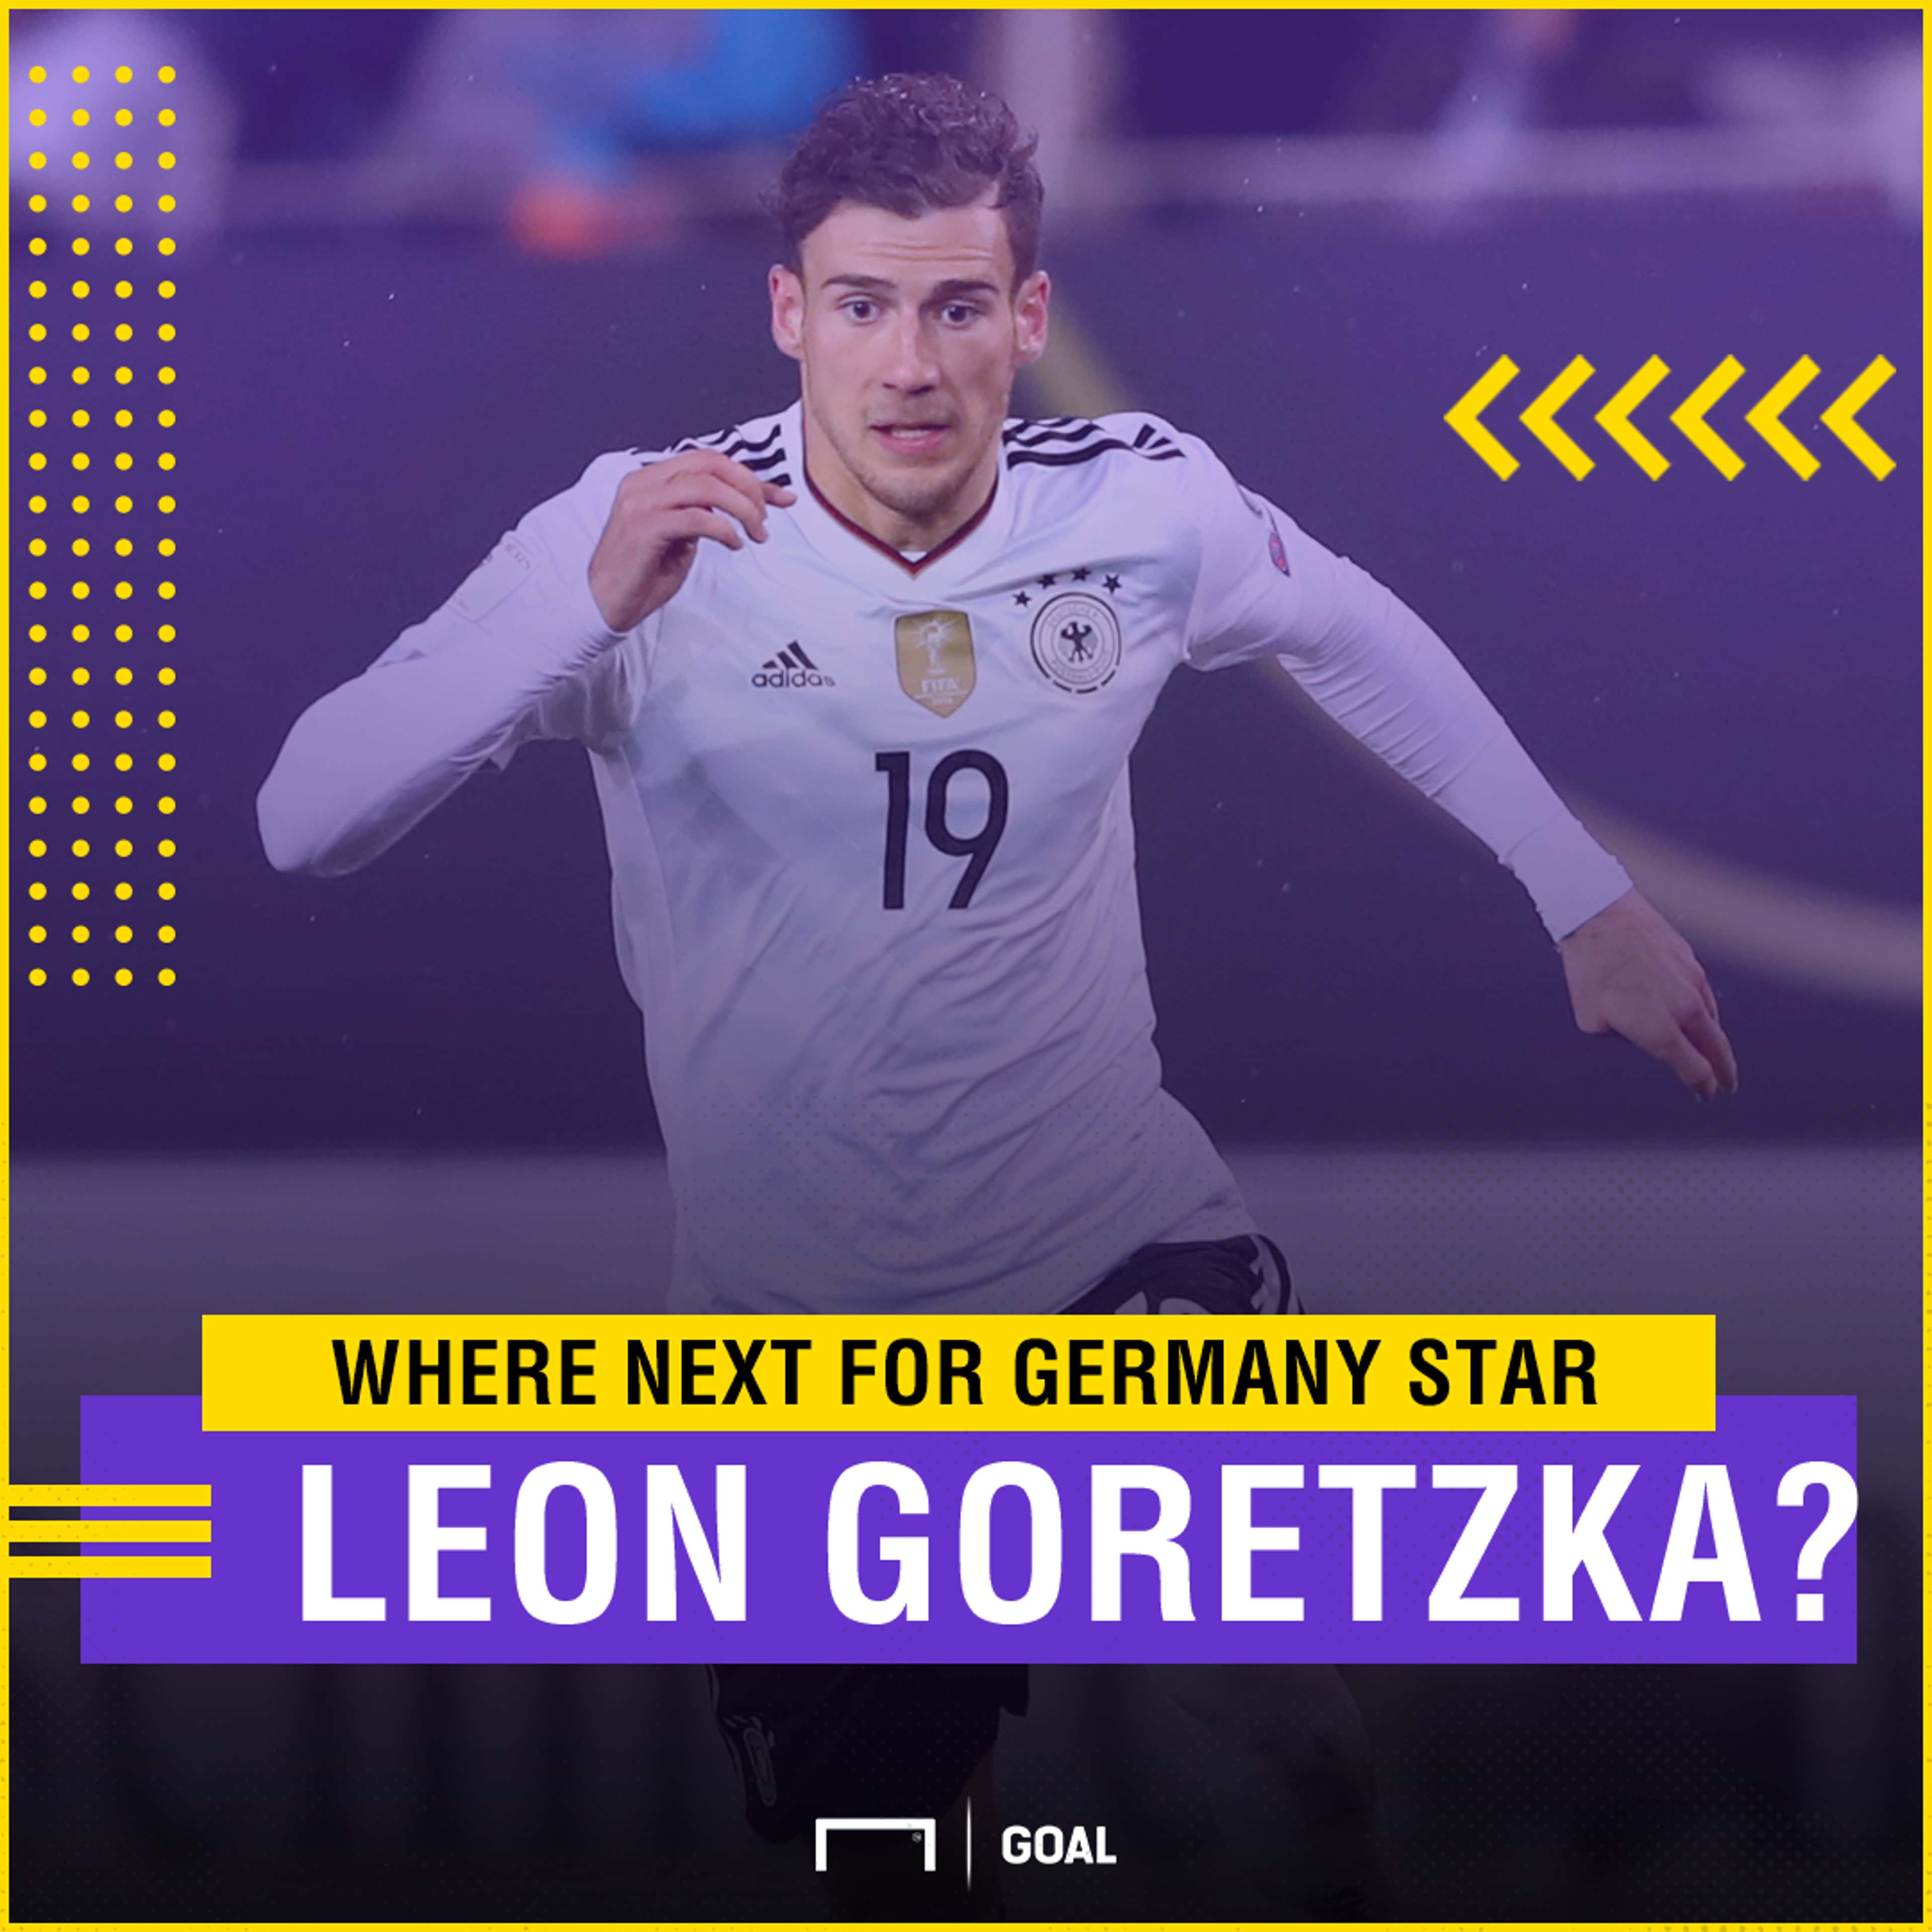 Leon Goretzka next move?